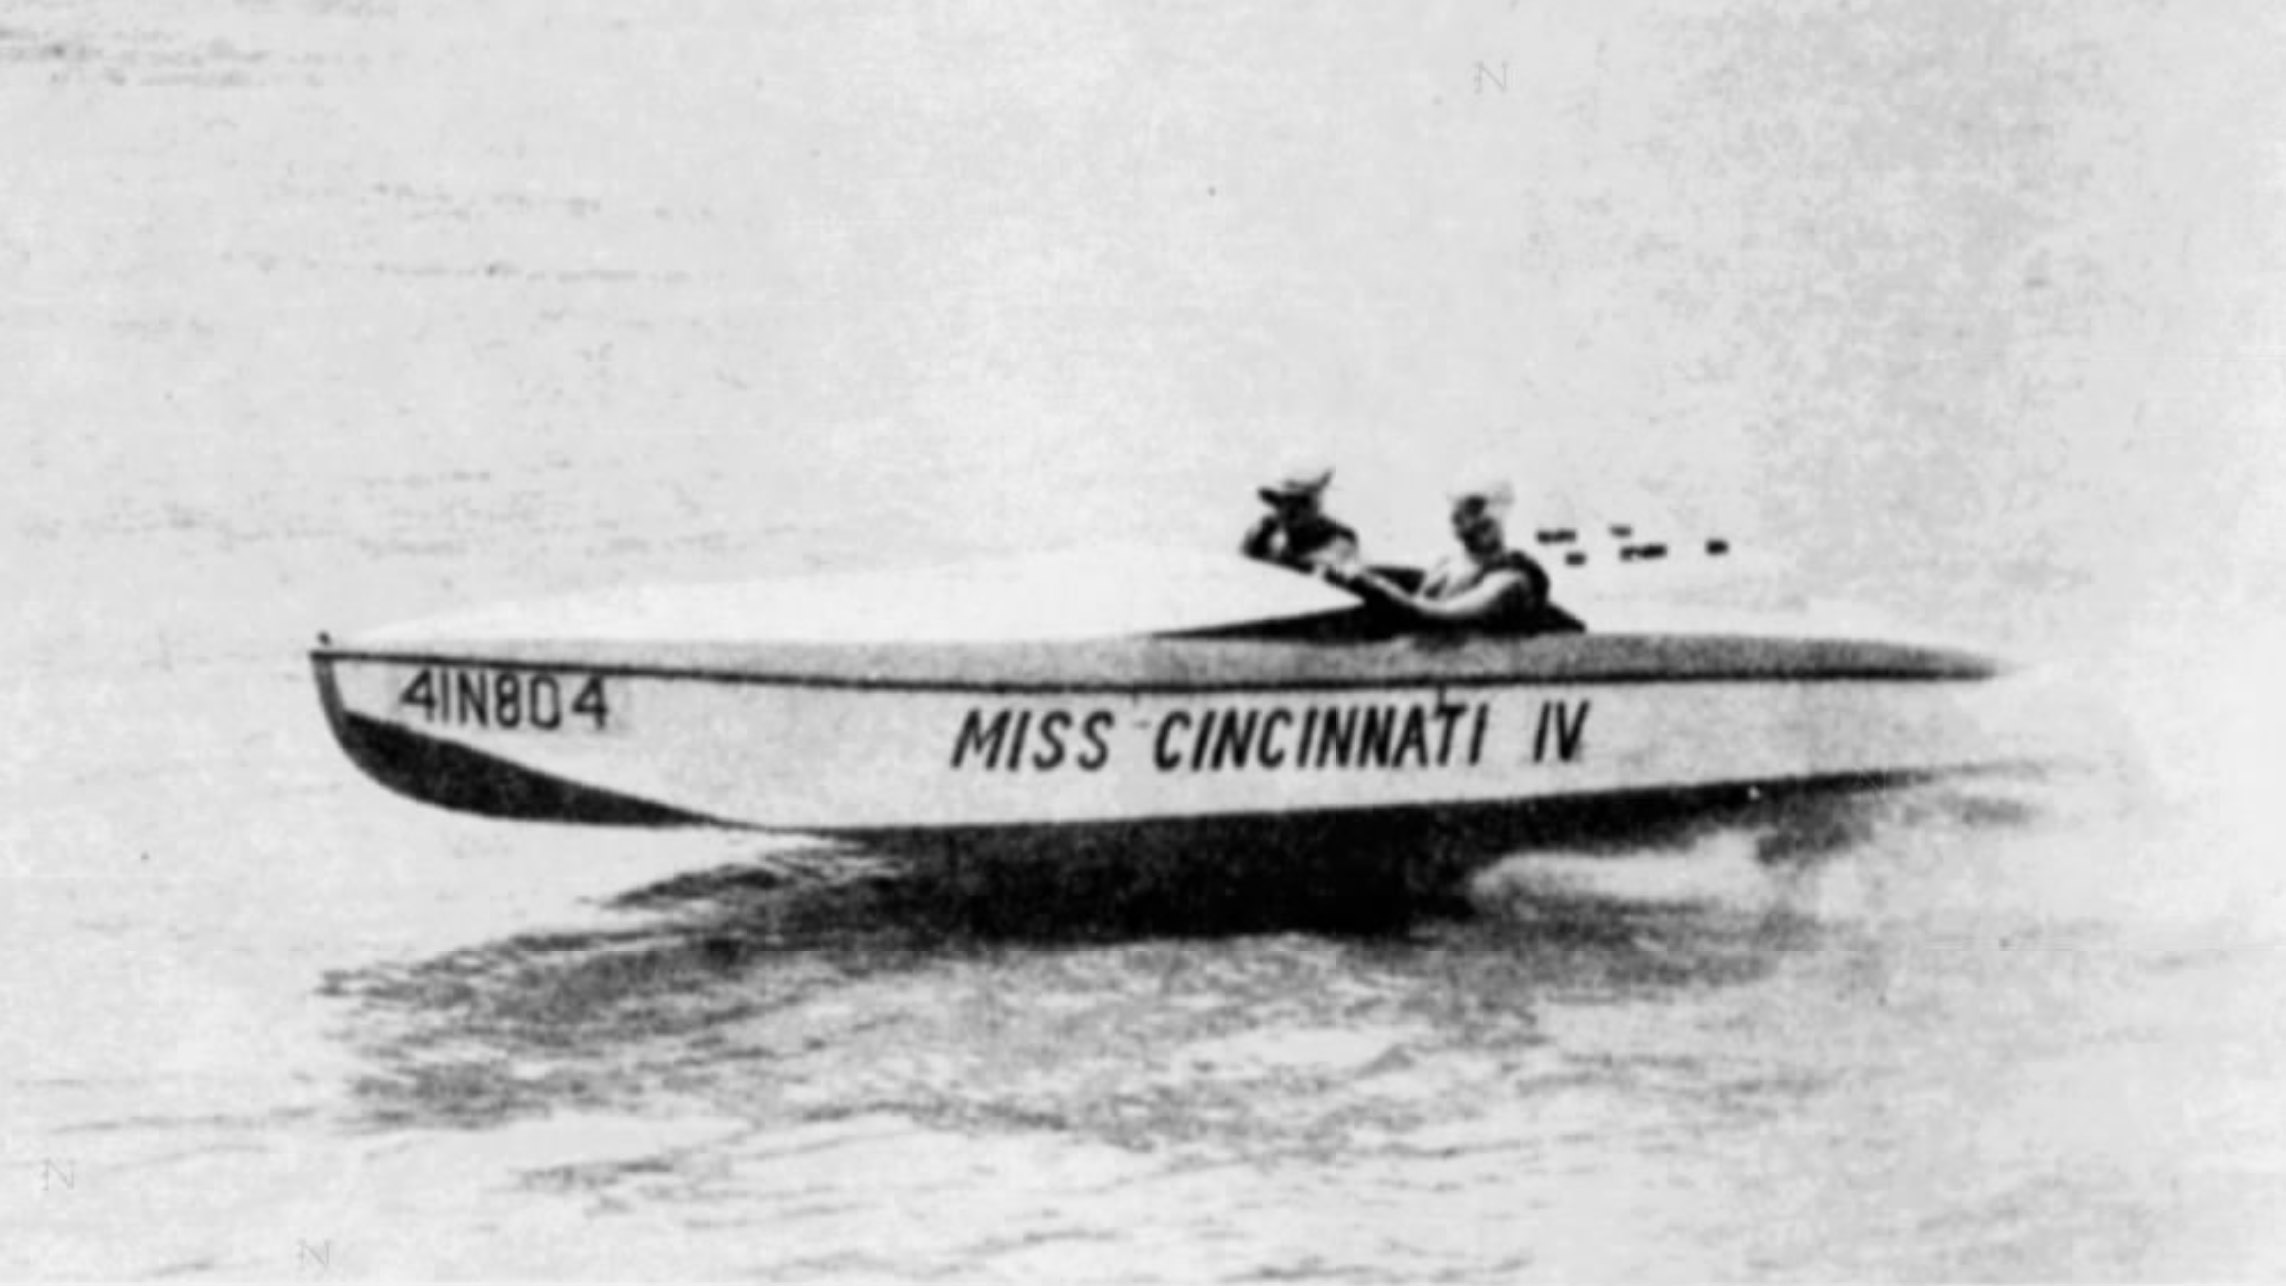 Miss Cincinnati IV